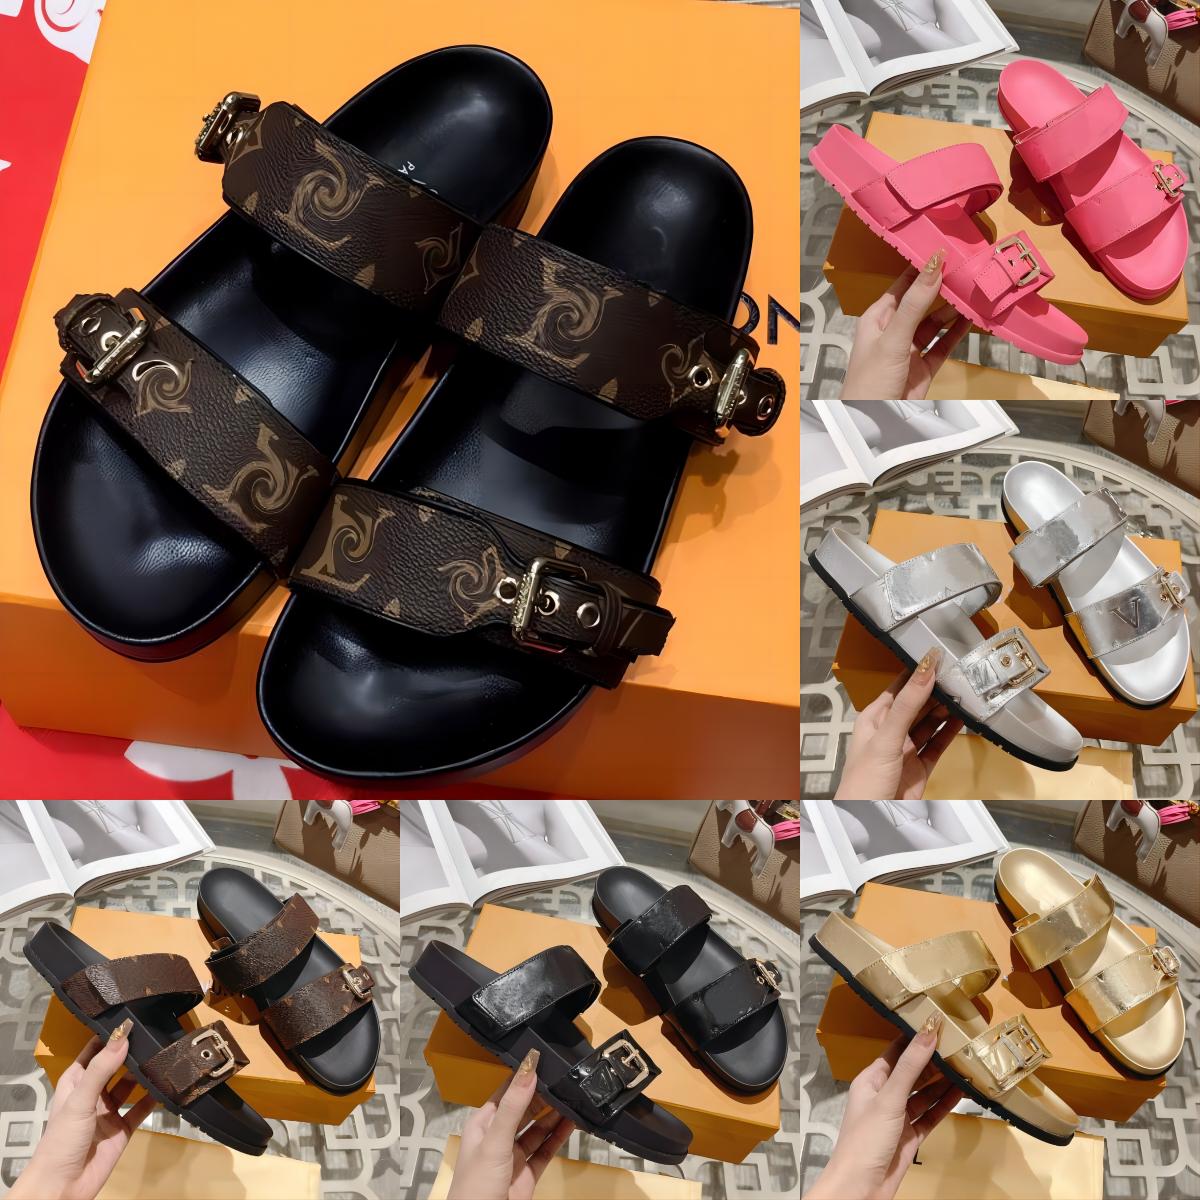 

Designer Women Slides leather Sandal Bom Dia Flat Mule Slipper Patent Canvas Beach Sandals Rubber Soles Summer Flip Flops Fashion top quality EUR 35-46, Color 7